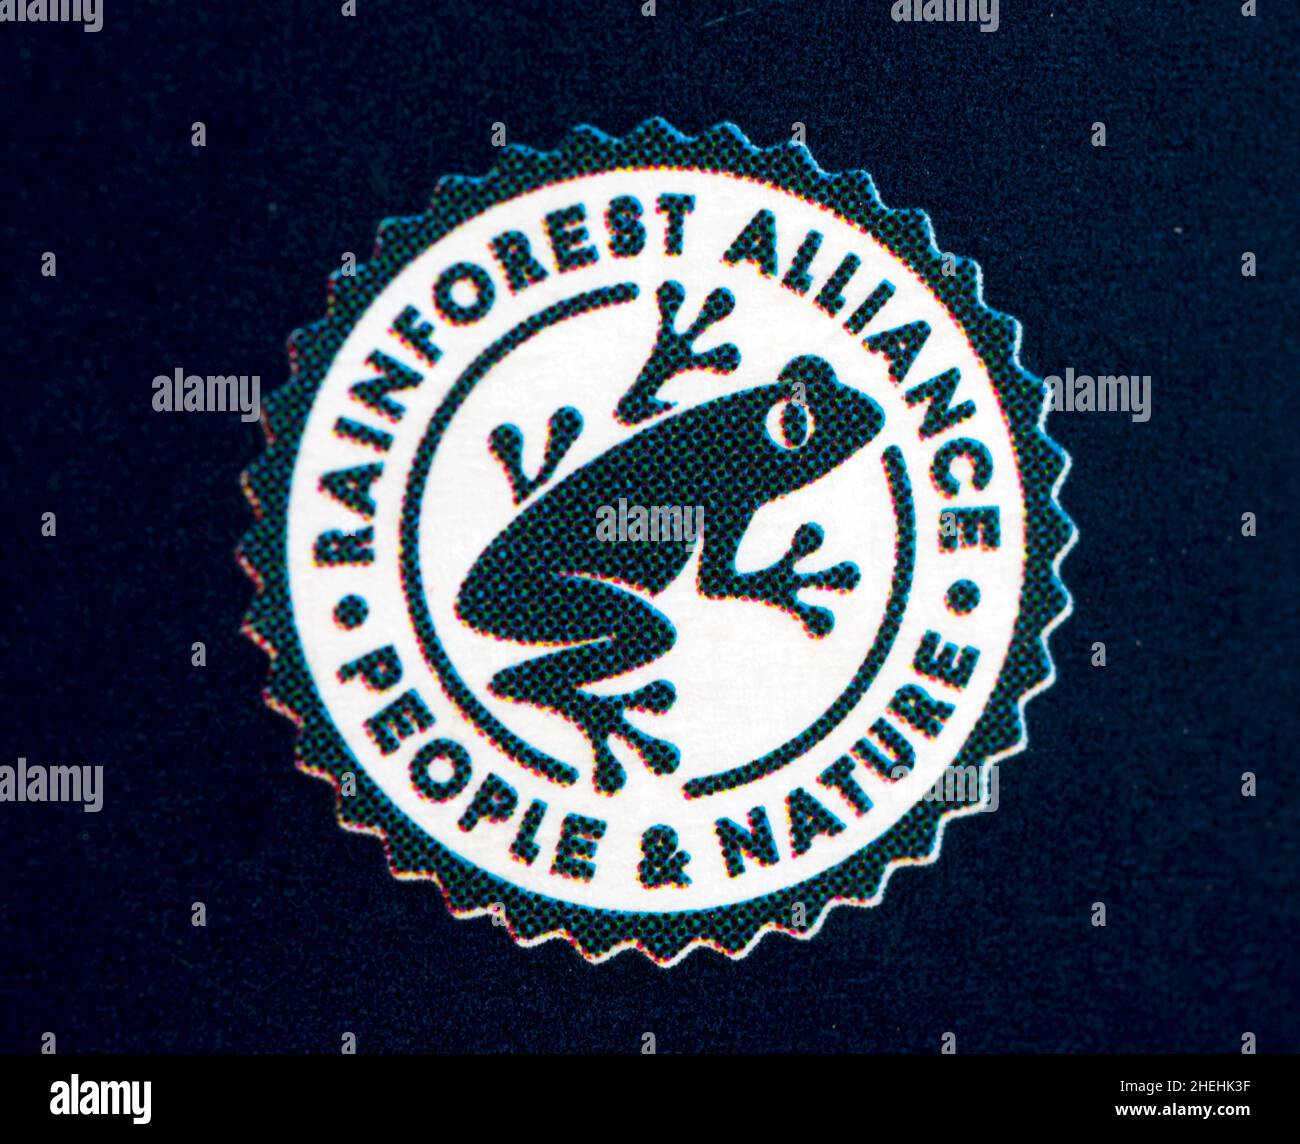 Symbole Rainforest Alliance sur l'emballage du produit Photo Stock - Alamy